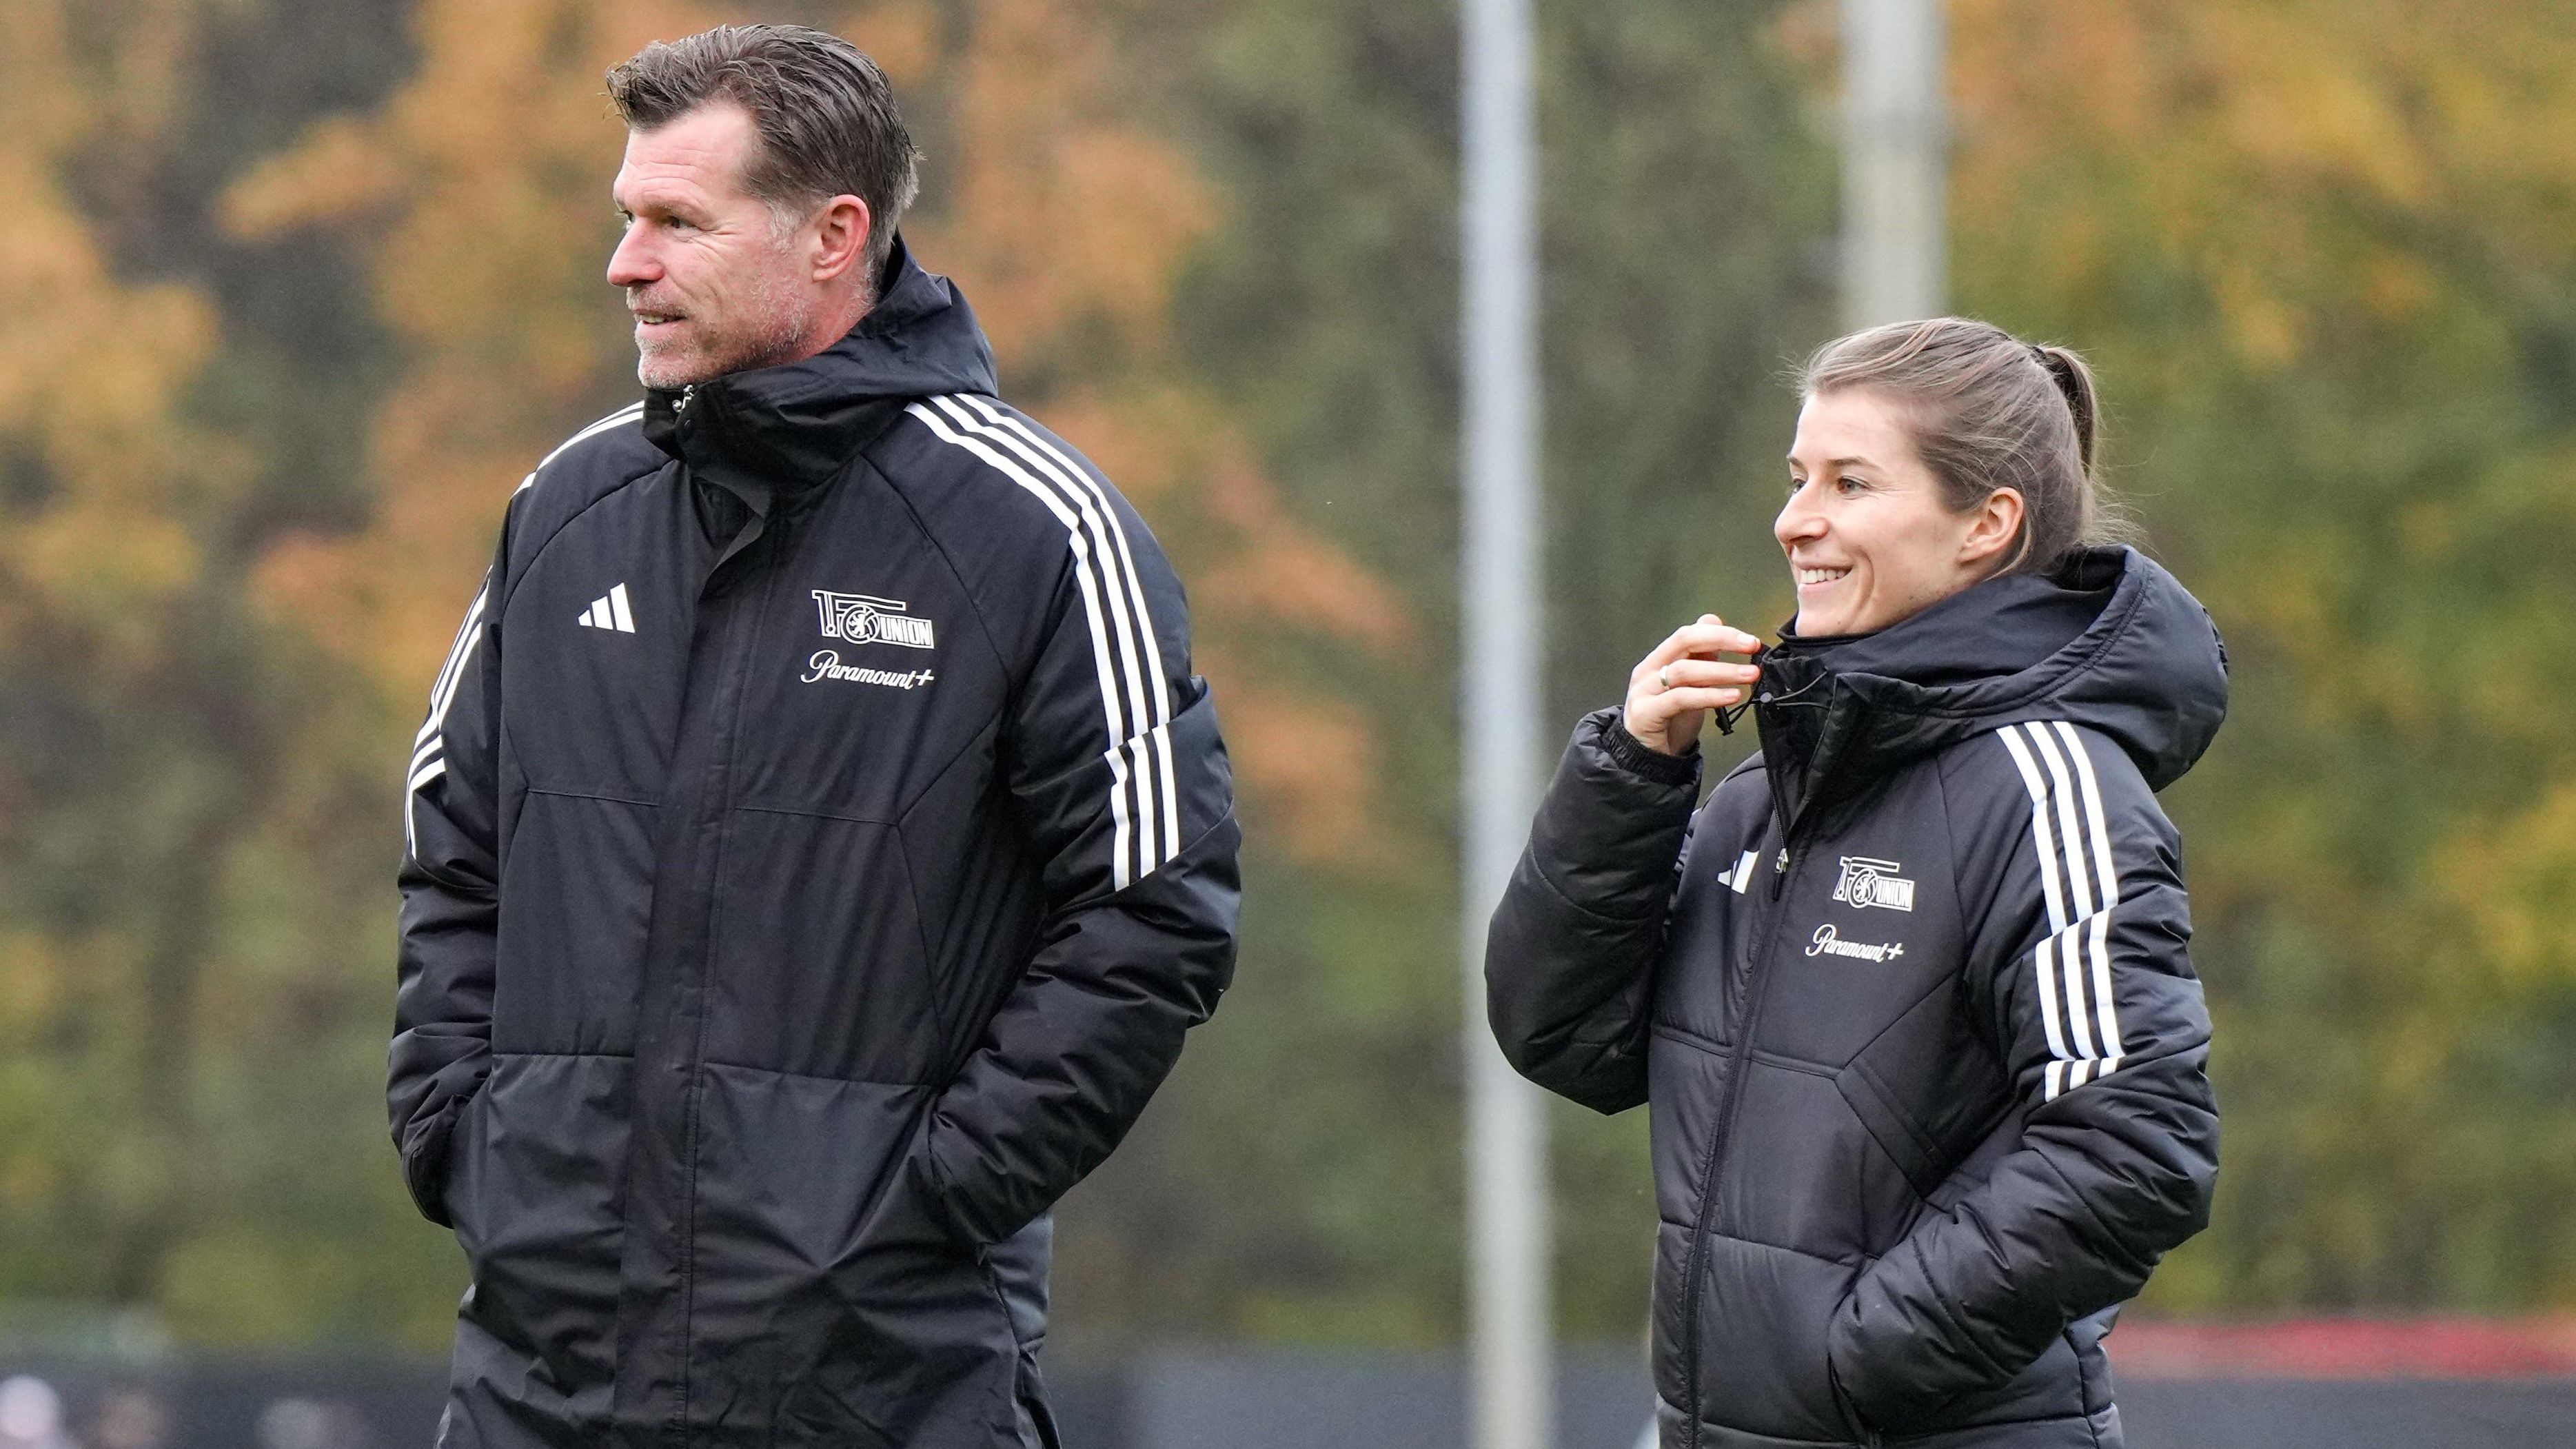 Ilyen még nem volt a Bundesligában: Schäferék női edzőt kaptak